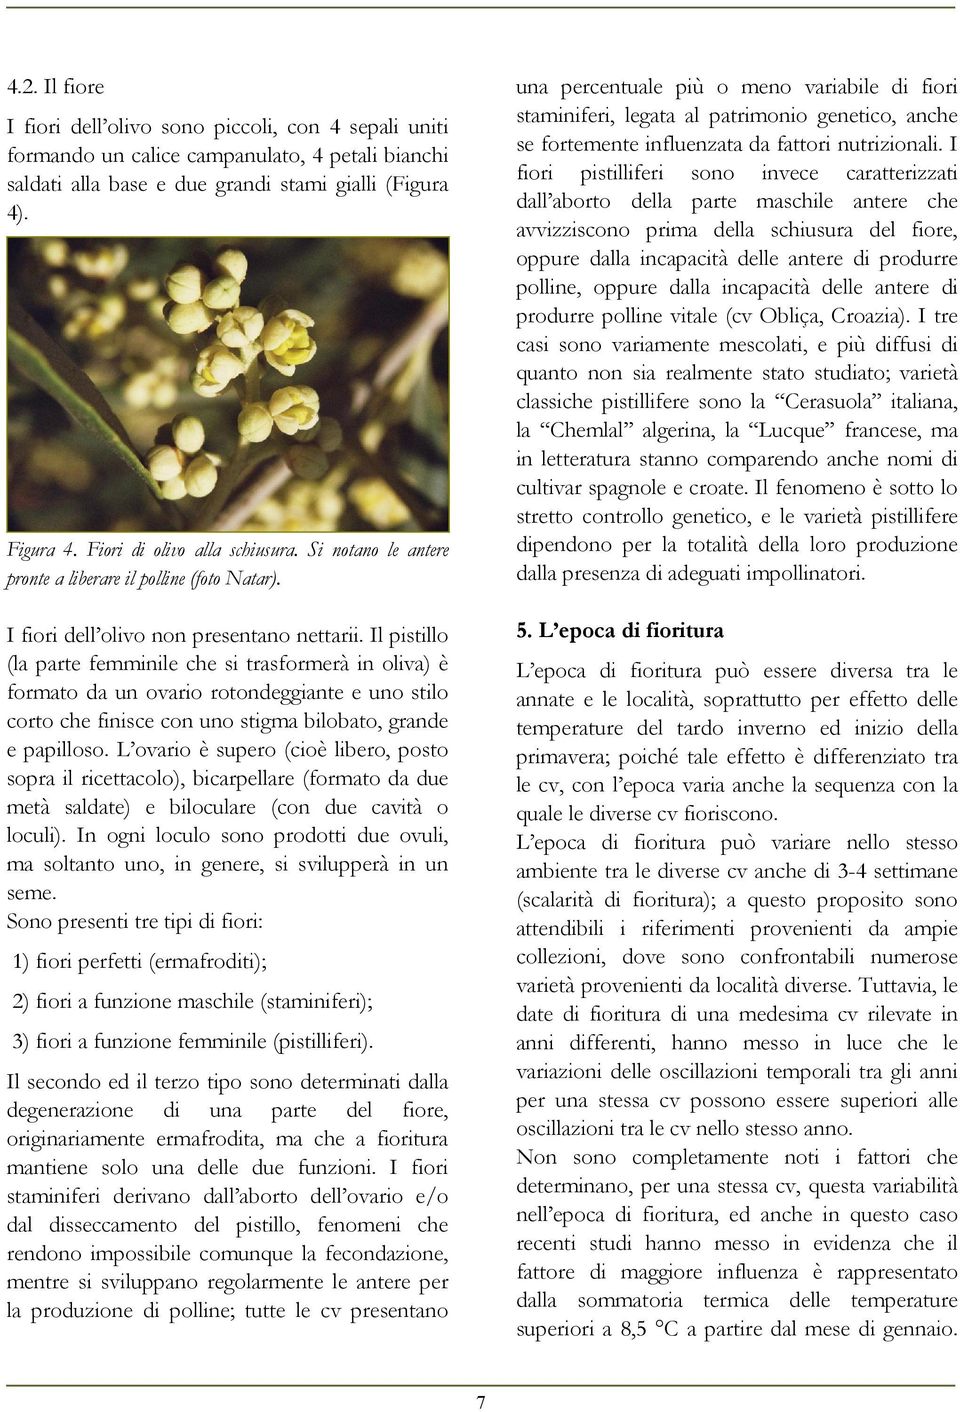 oppure dalla incapacità delle antere di produrre polline vitale (cv Obliça, Croazia).